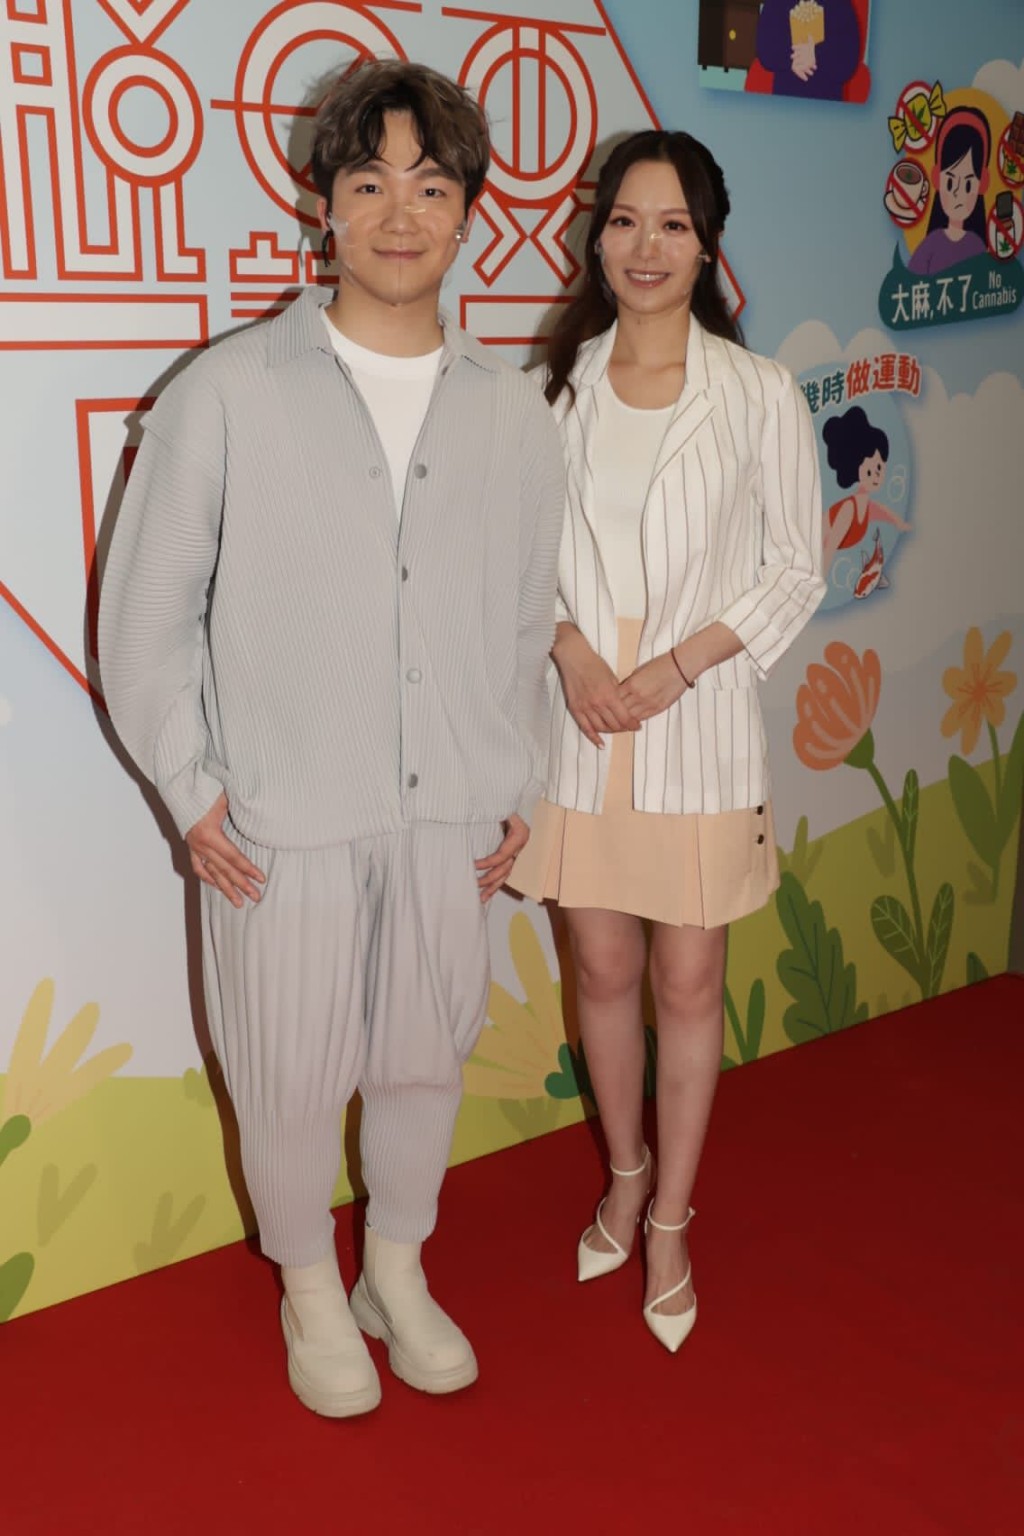 何晉樂同馮盈盈為TVB節目《脫毒要識Do》進行錄影。